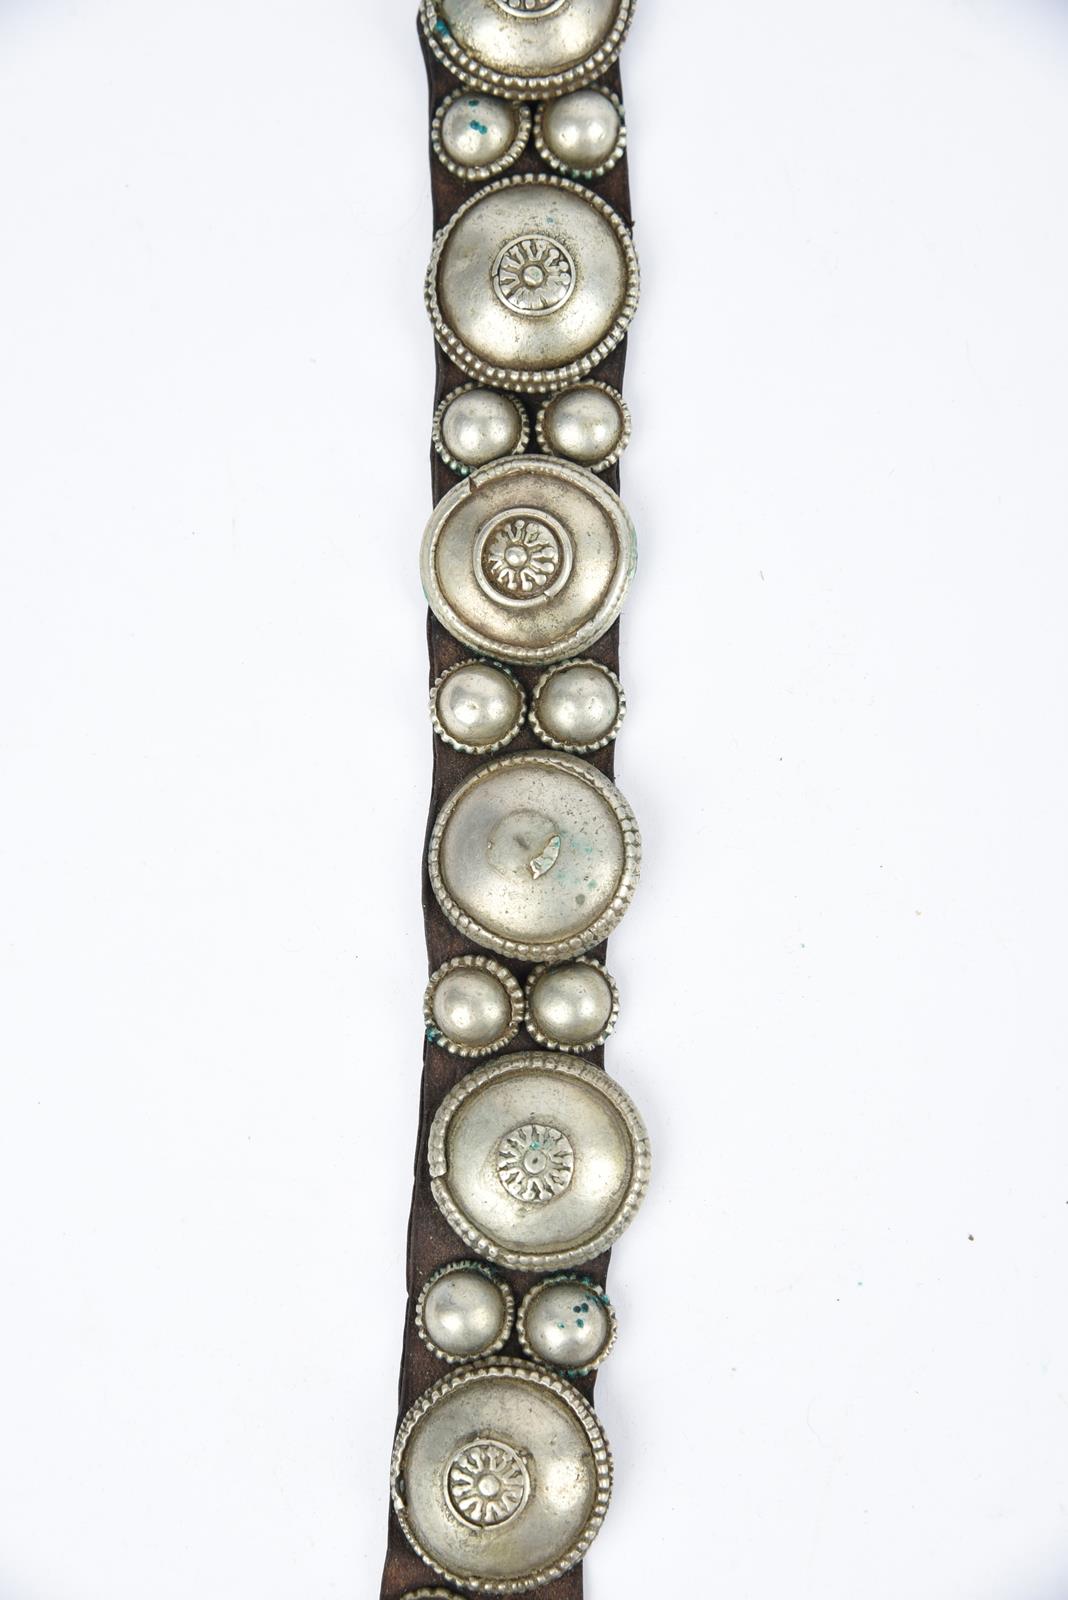 λA Bedouin amulet chest ornament cloth with numerous sewn on amulets and beads, 62cm long, and three - Bild 12 aus 27